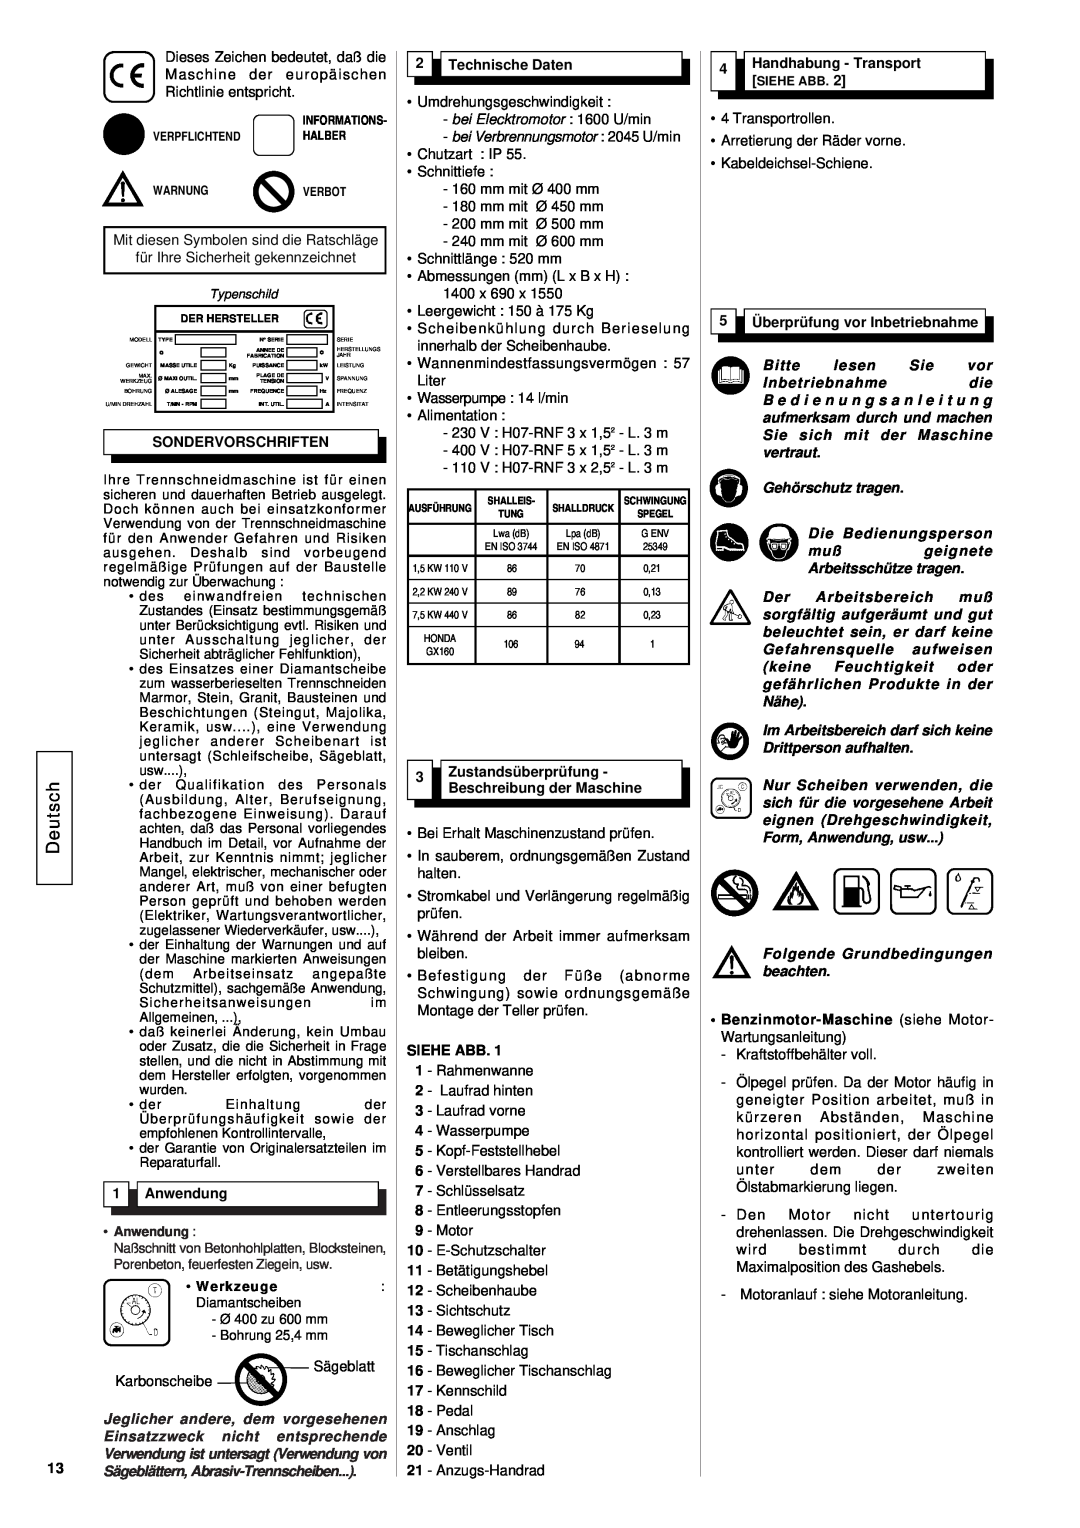 Husqvarna TS 600 M Deutsch, Sondervorschriften, Anwendung, Technische Daten, Siehe Abb, Handhabung - Transport SIEHE ABB 